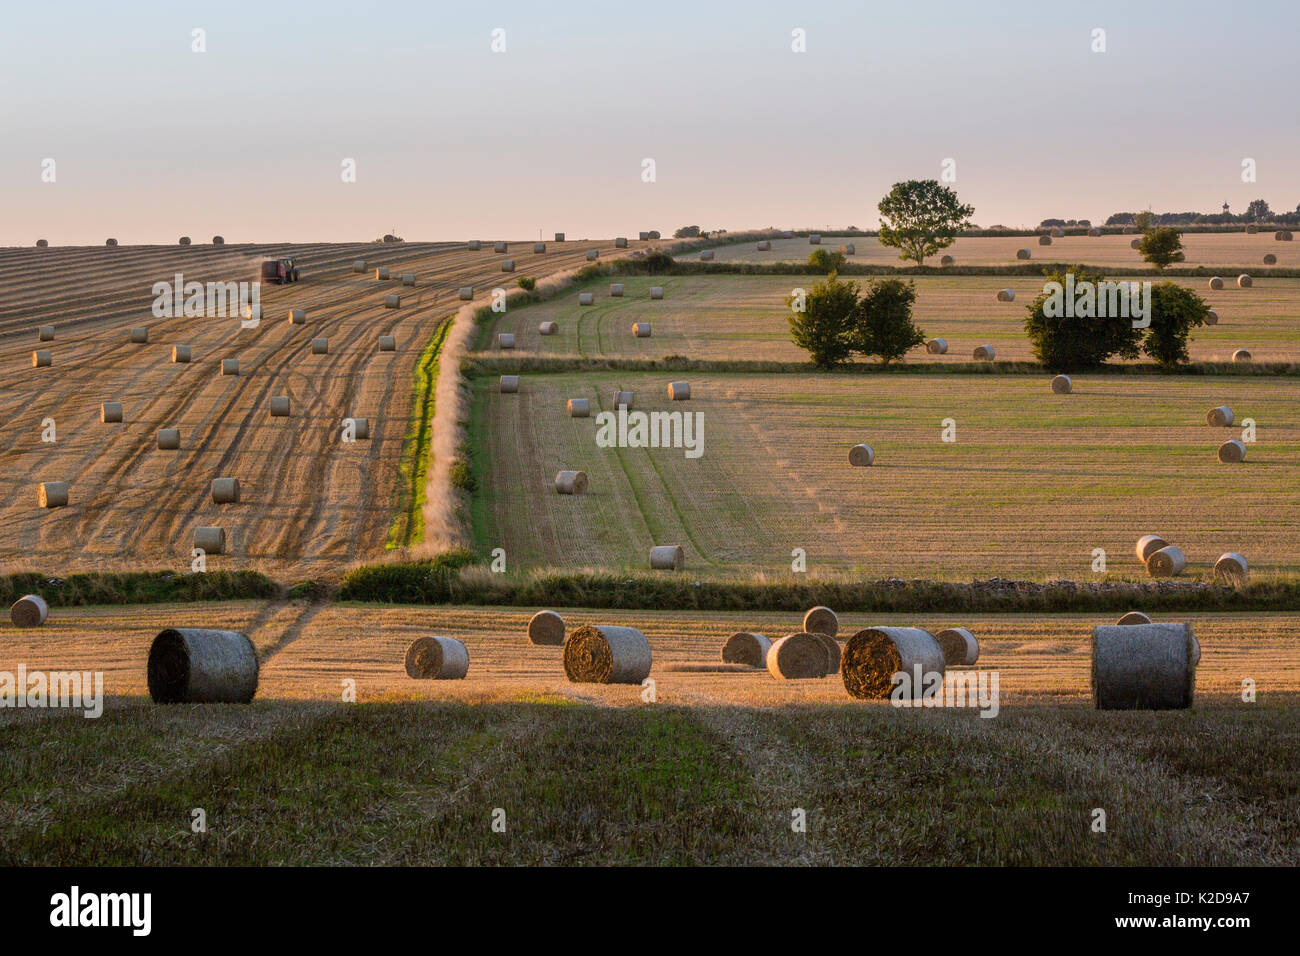 Los fardos de paja después de la cosecha a finales del verano, el paisaje de Cotswold Hawkesbury Upton, Gloucestershire, Reino Unido. De septiembre de 2015. Foto de stock